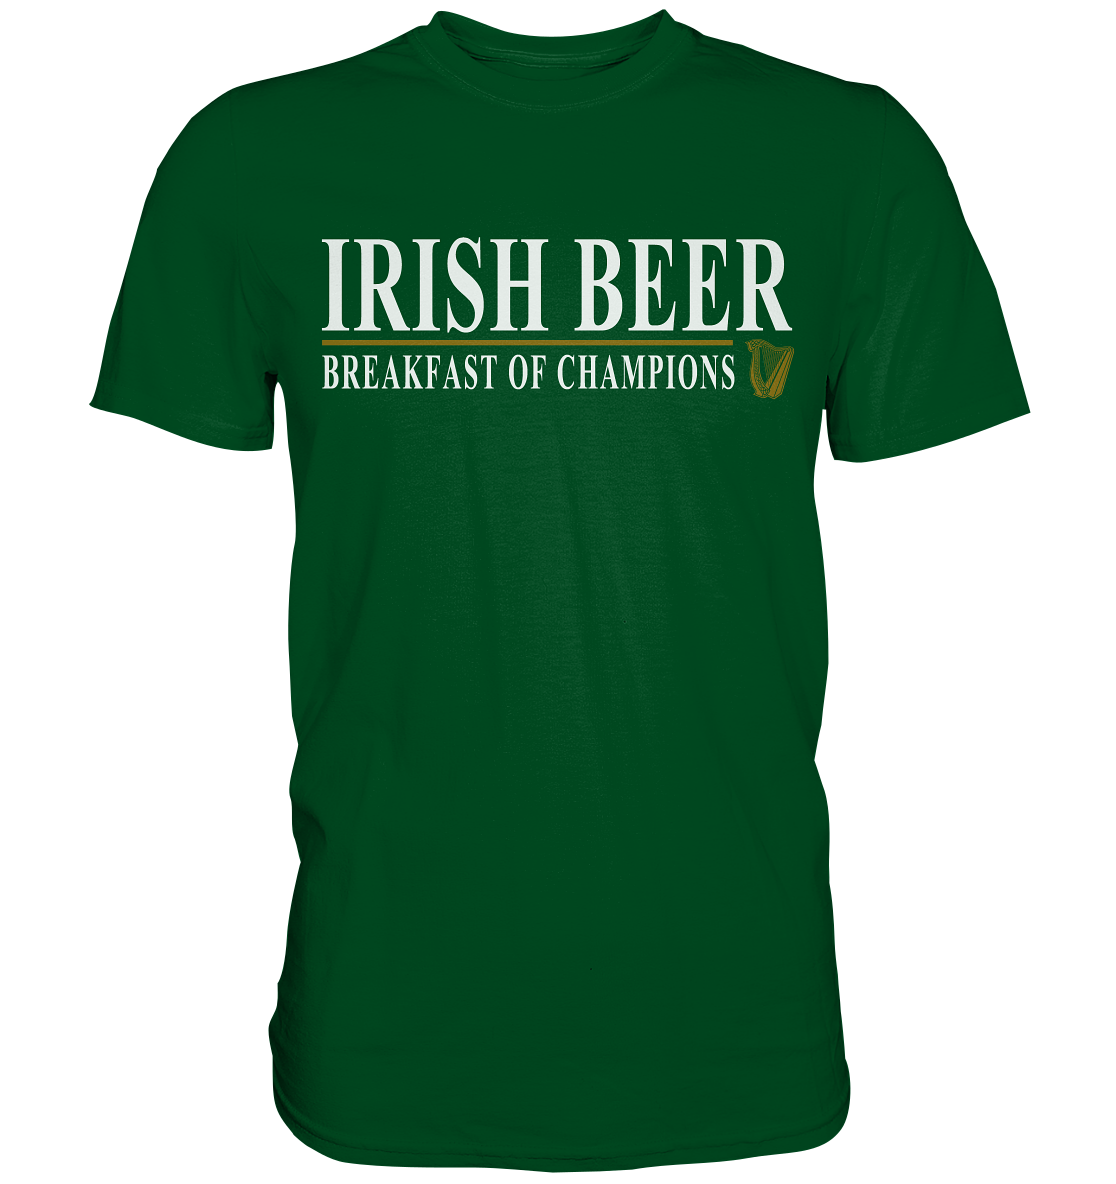 Irish Beer "Breakfast Of Champions" - Premium Shirt